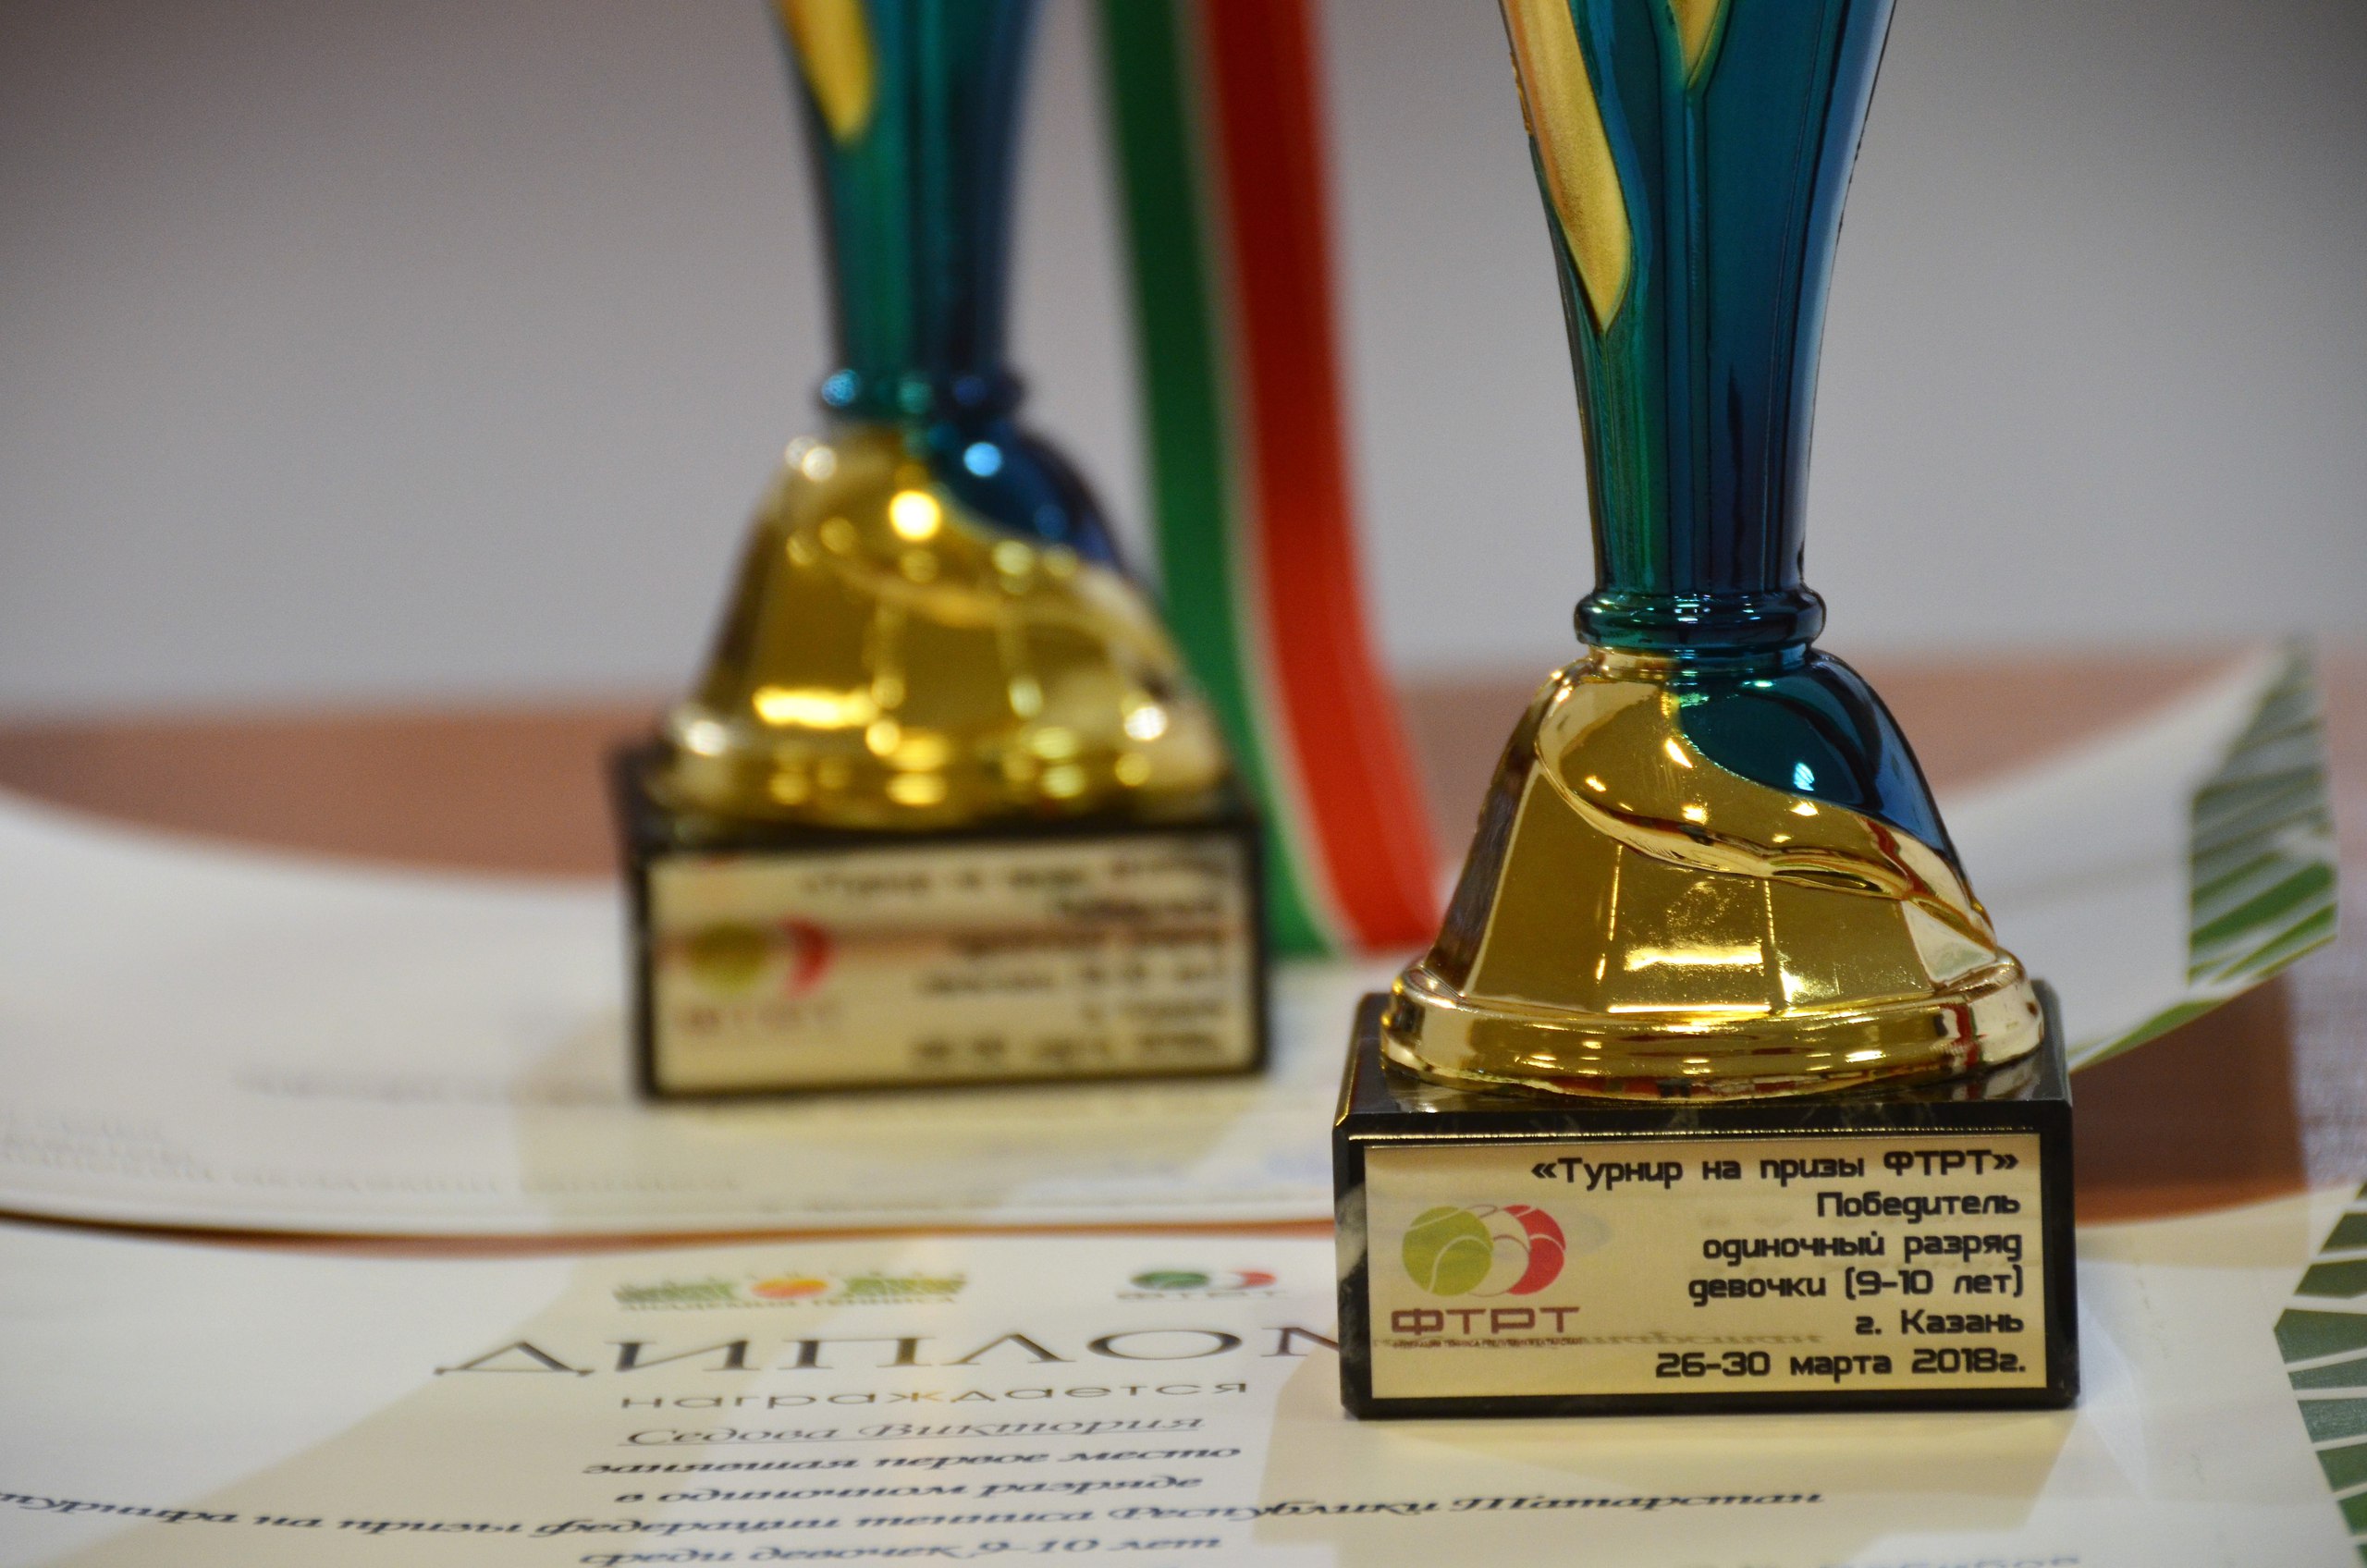 В Казанской Академии Тенниса состоялась церемония награждения победителей и призеров турнира на призы ФТРТ